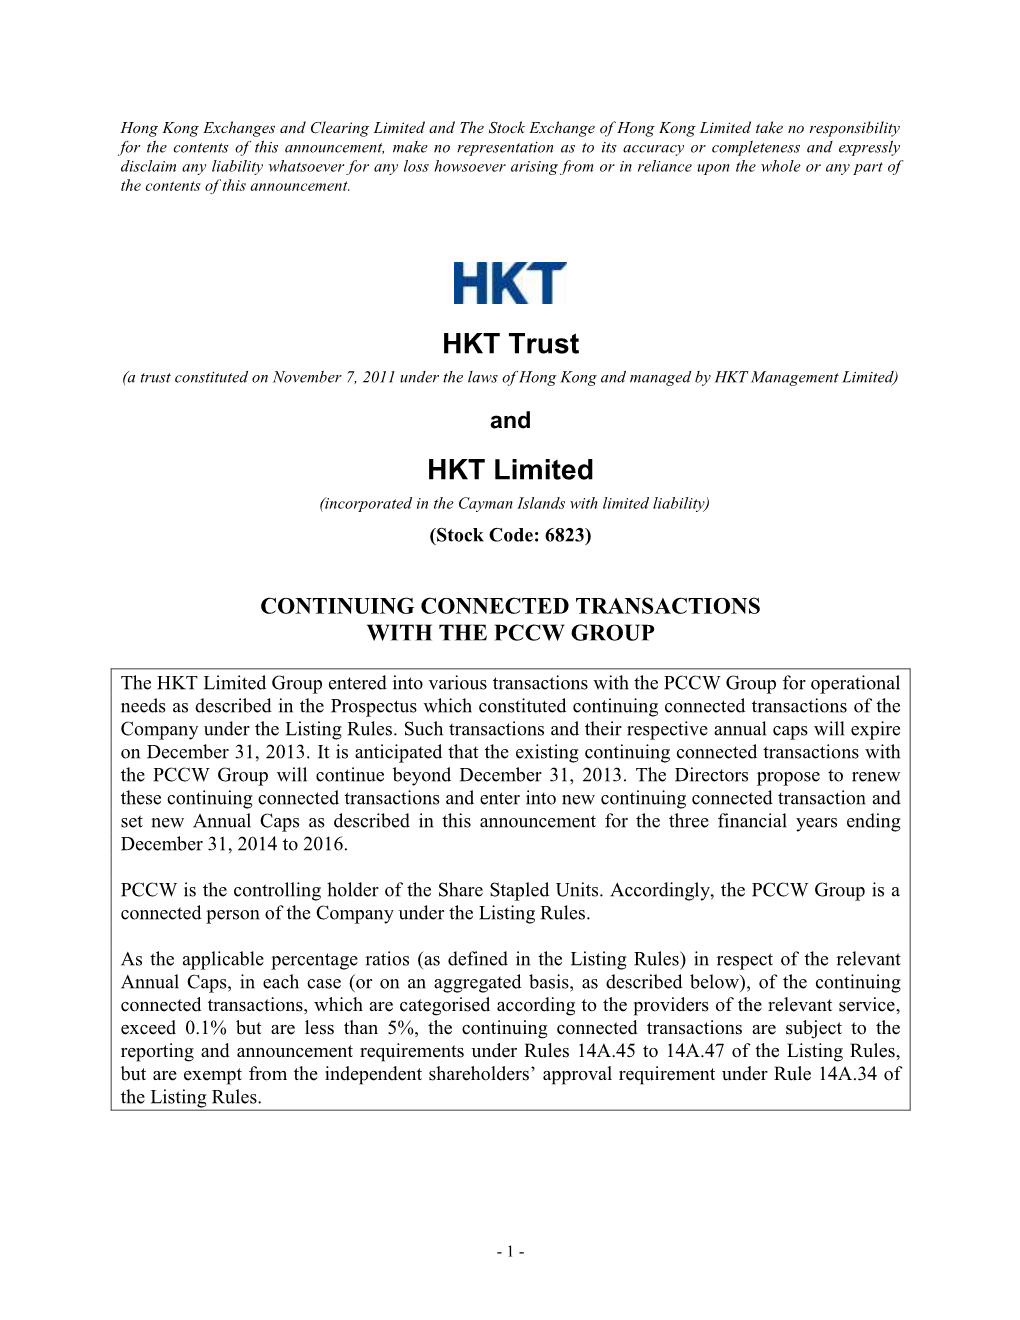 HKT Trust HKT Limited